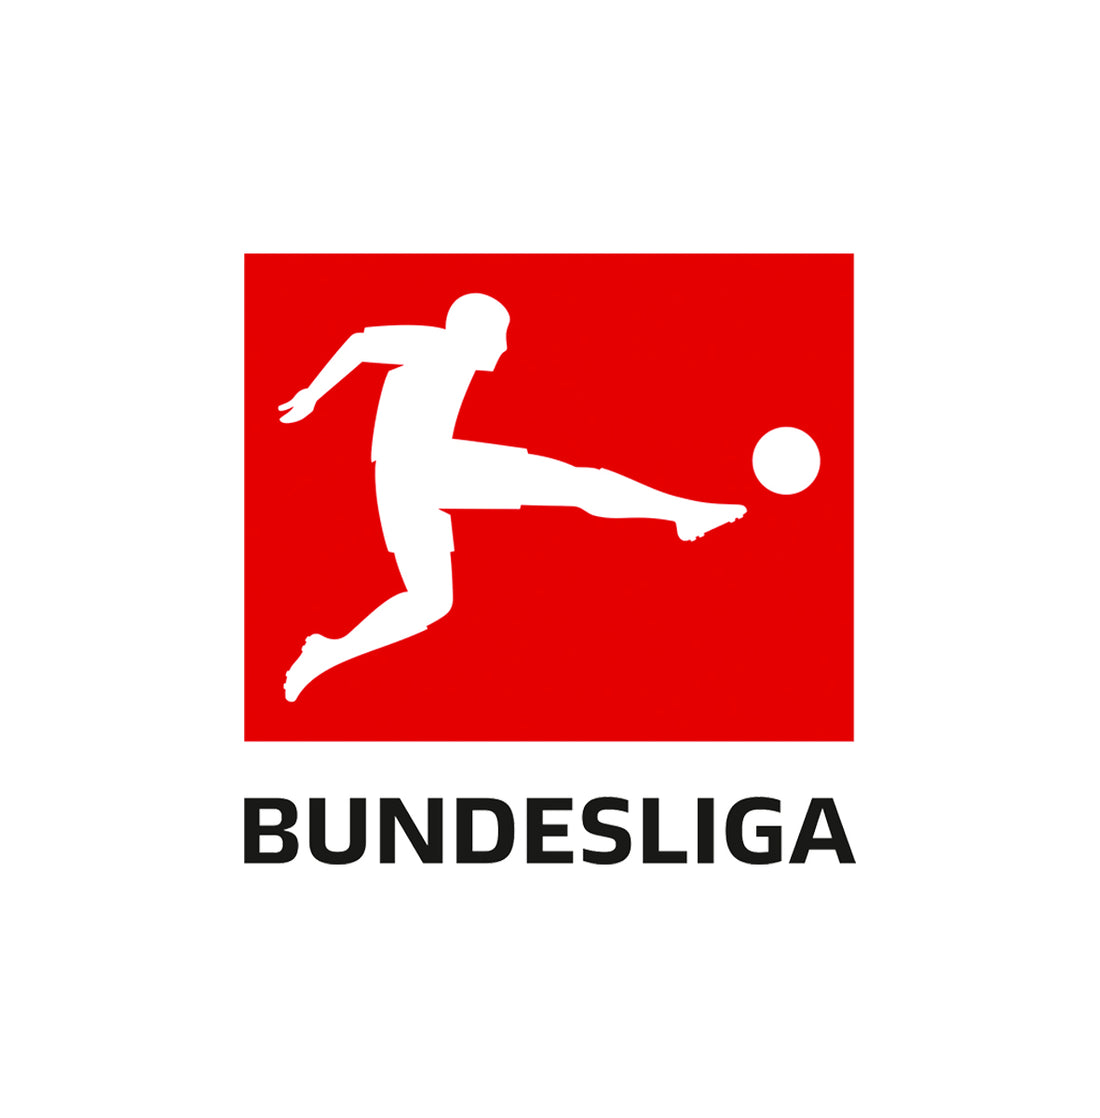  Bundesliga Collection